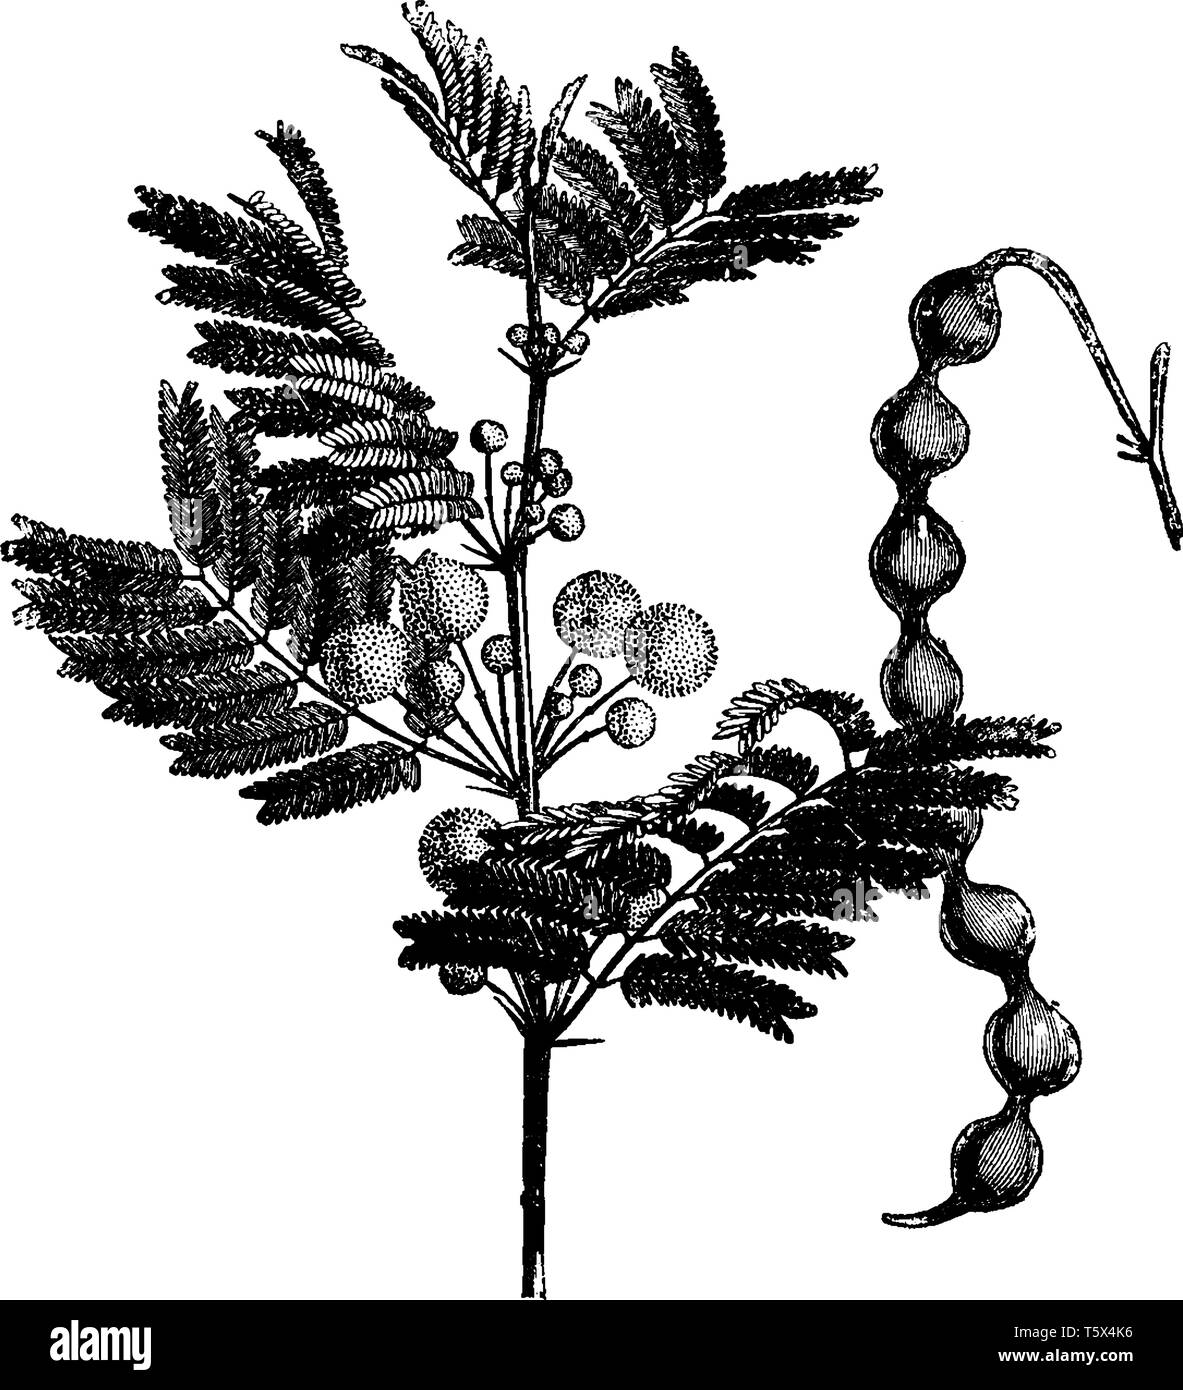 C'est un acacia, ses feuilles sont fines, les fleurs se sont développées sur la branche, et l'arbre a des gousses, de taille moyenne ou d'une gravure de dessin Ligne vintage Illustration de Vecteur